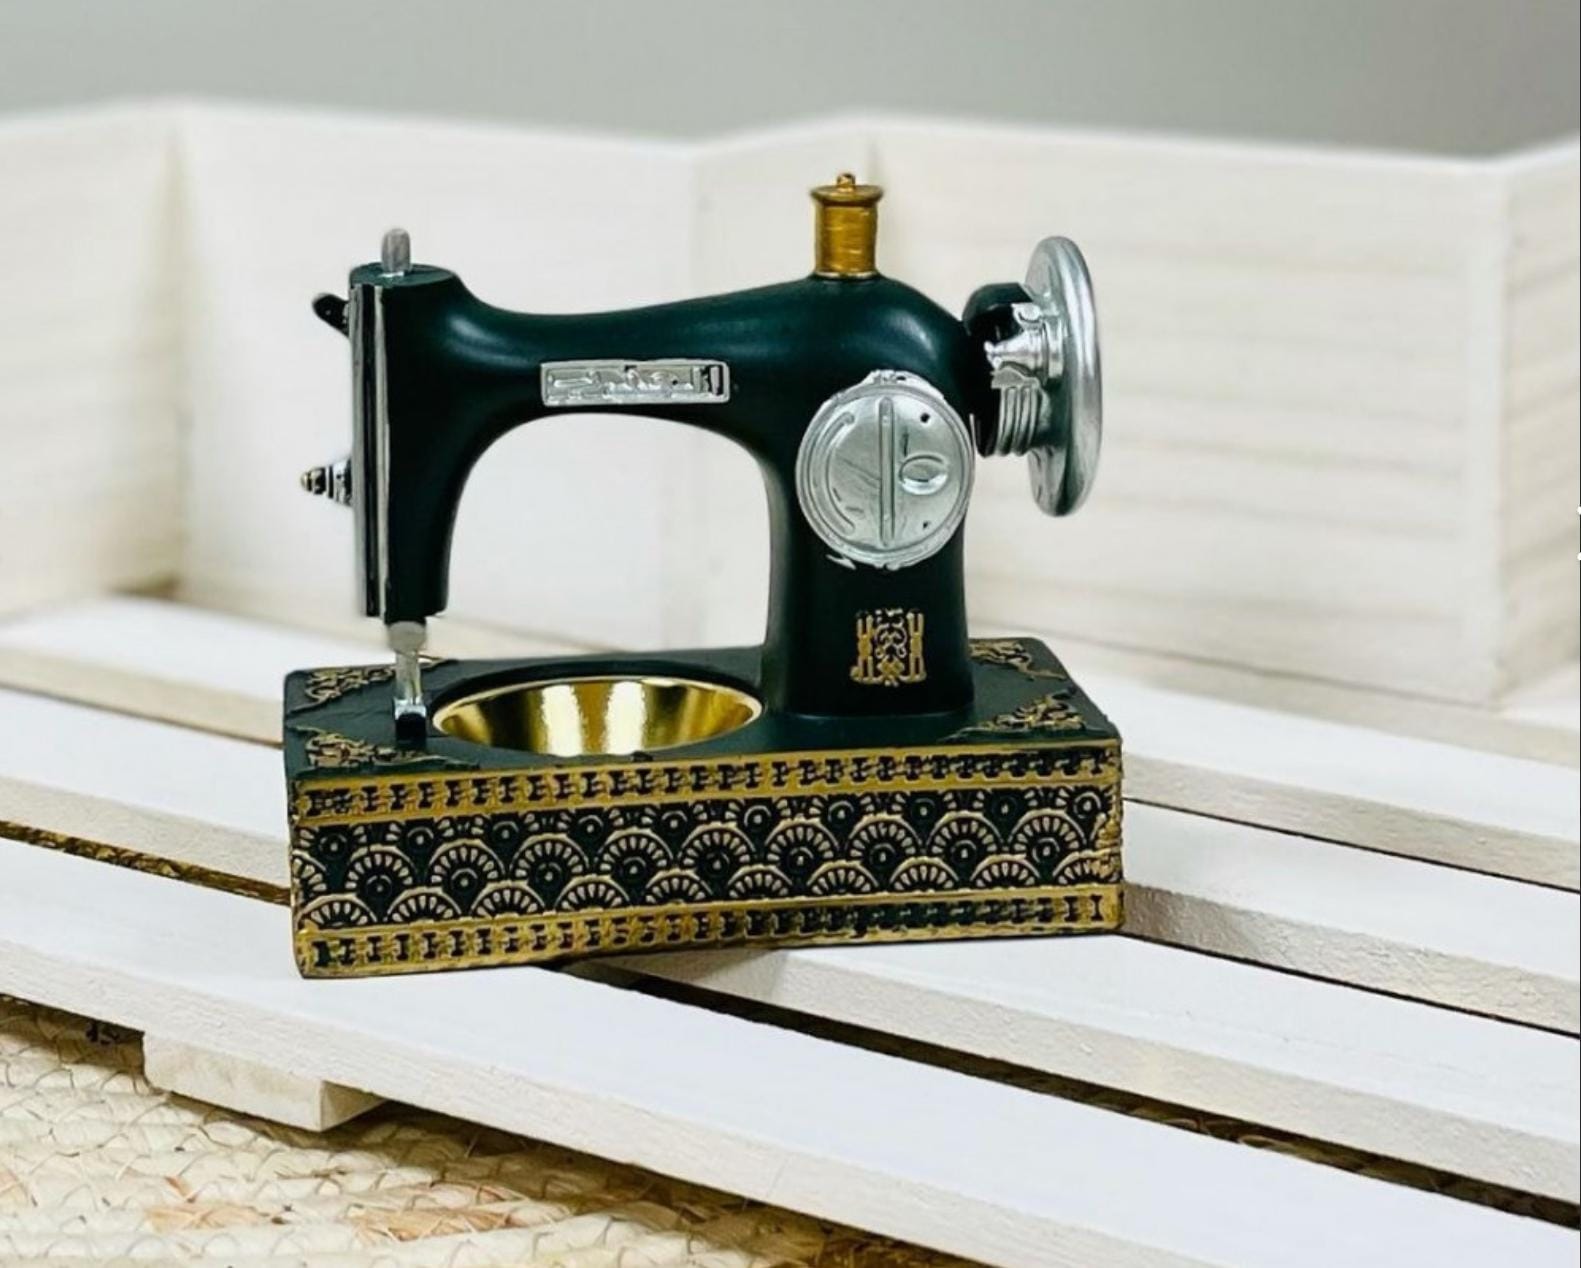 Mubkhar Sewing Machine